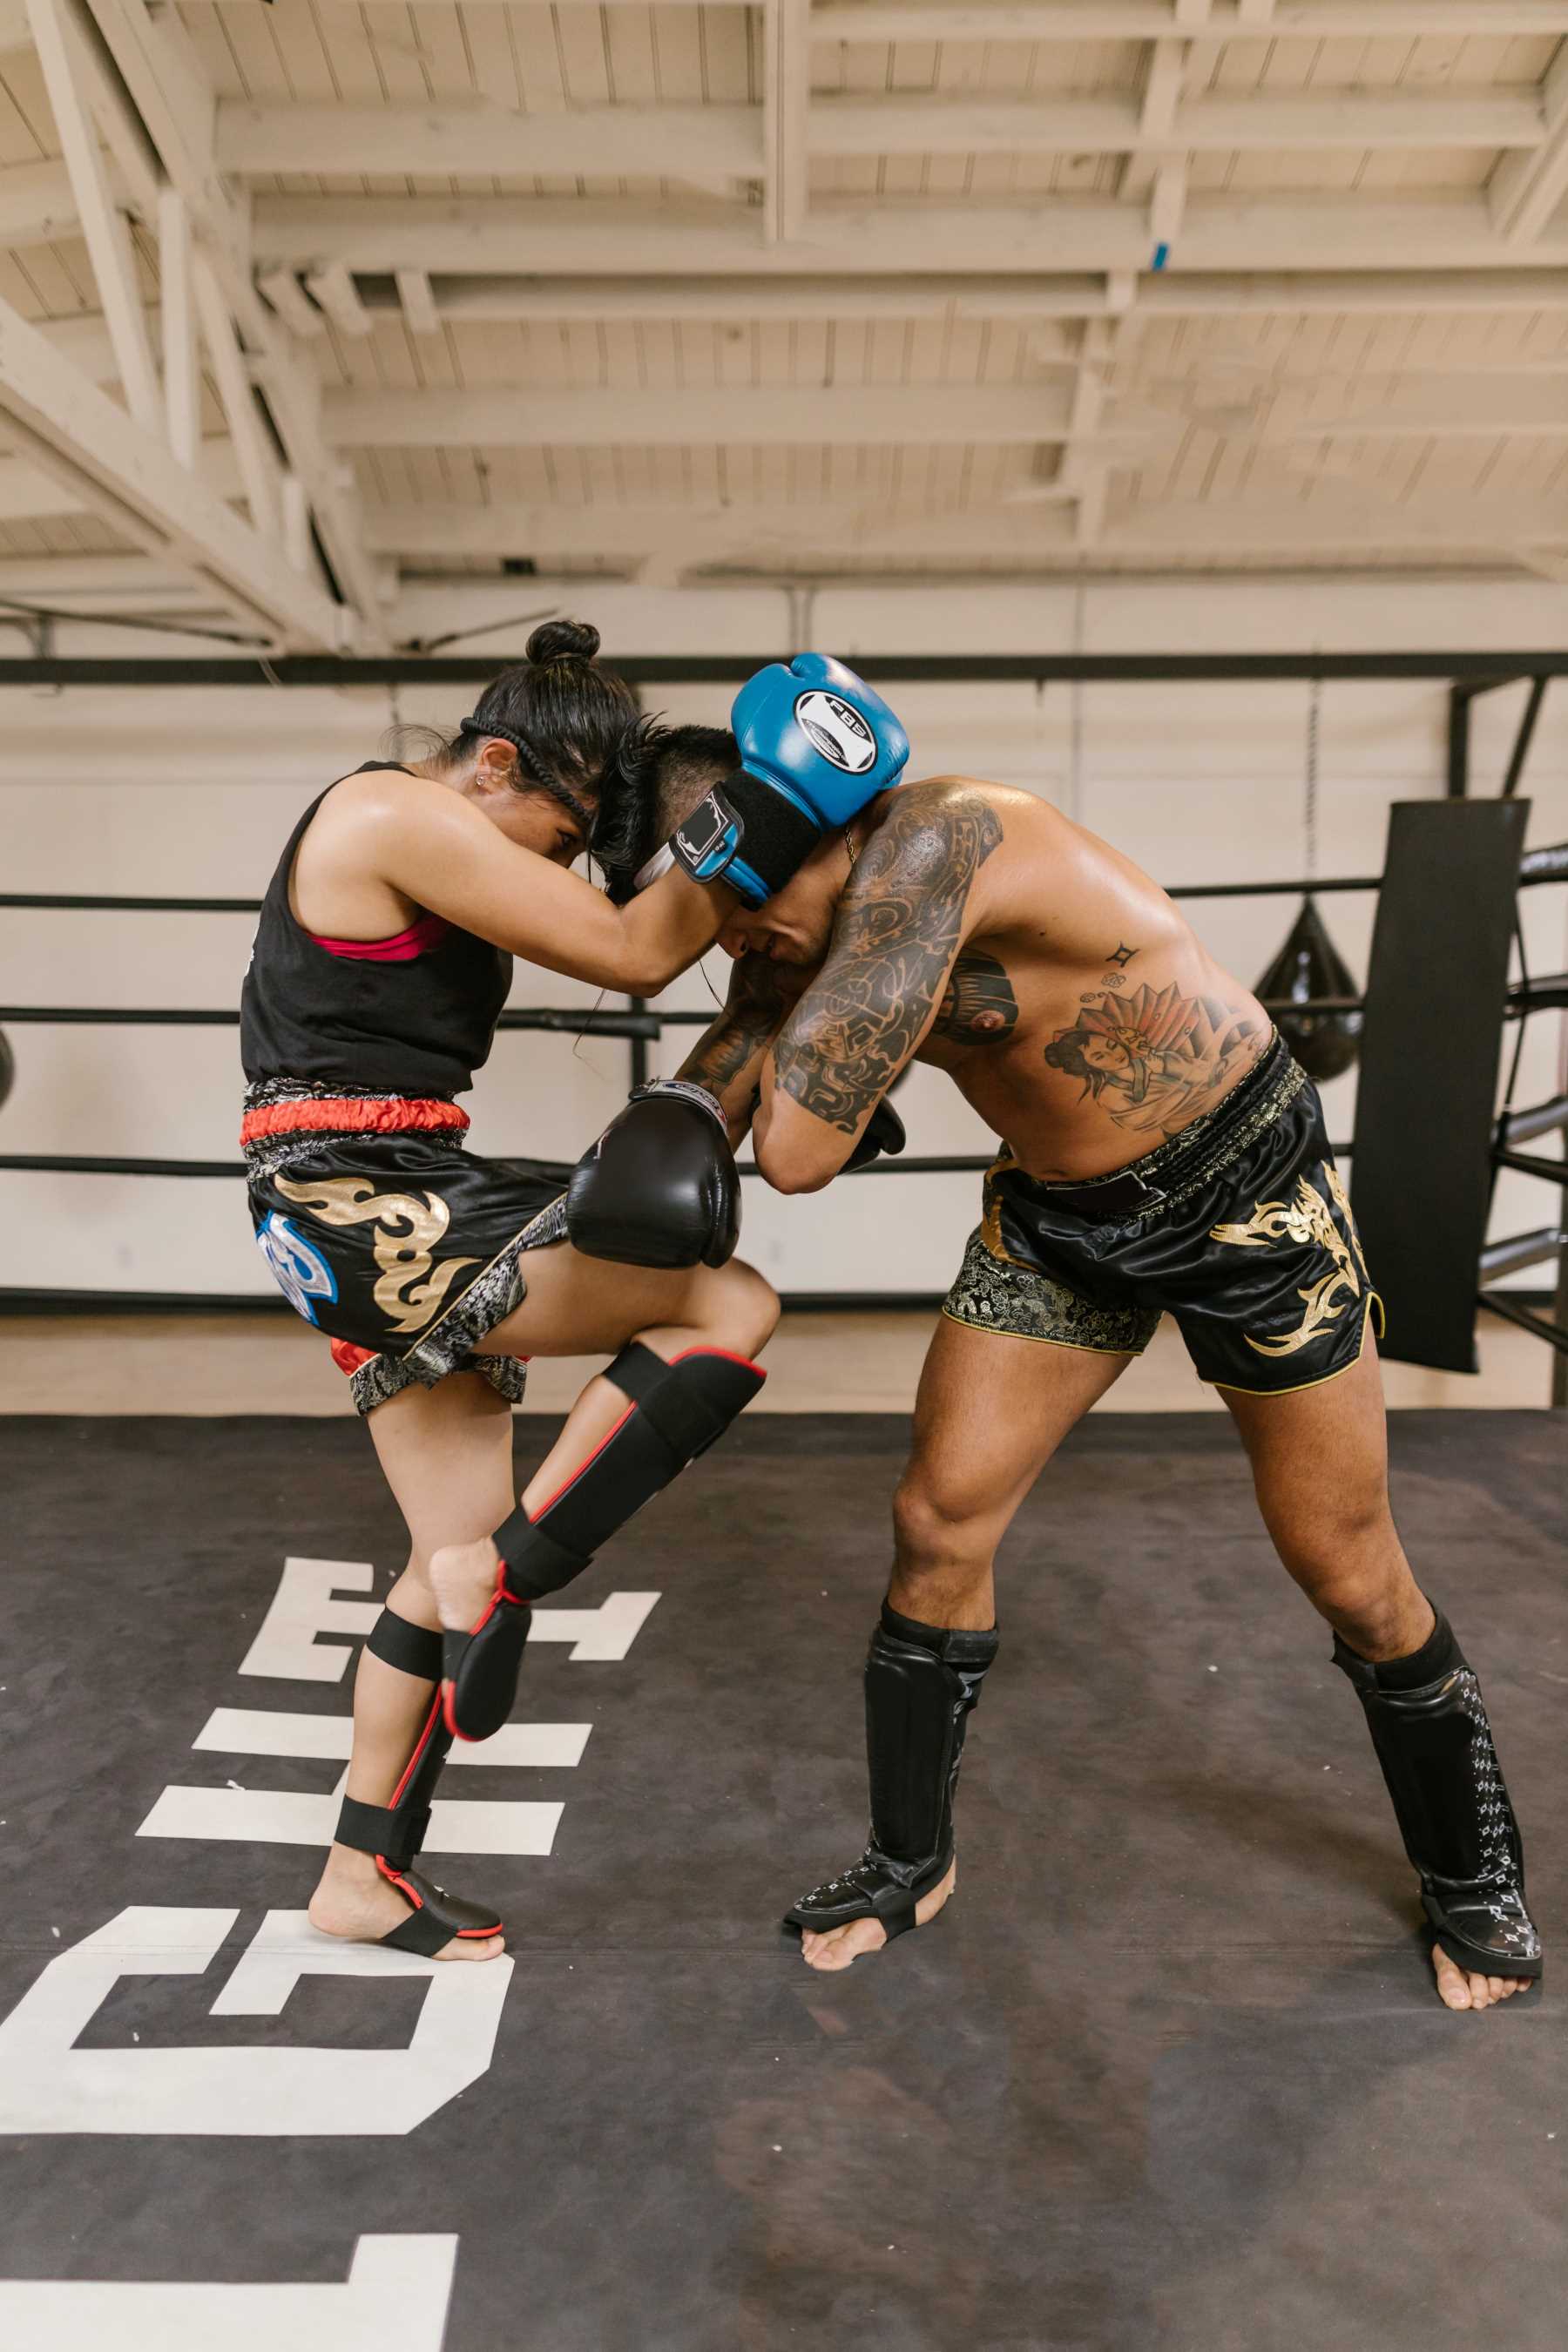 La imagen muestra a dos personas practicando deporte de combate.